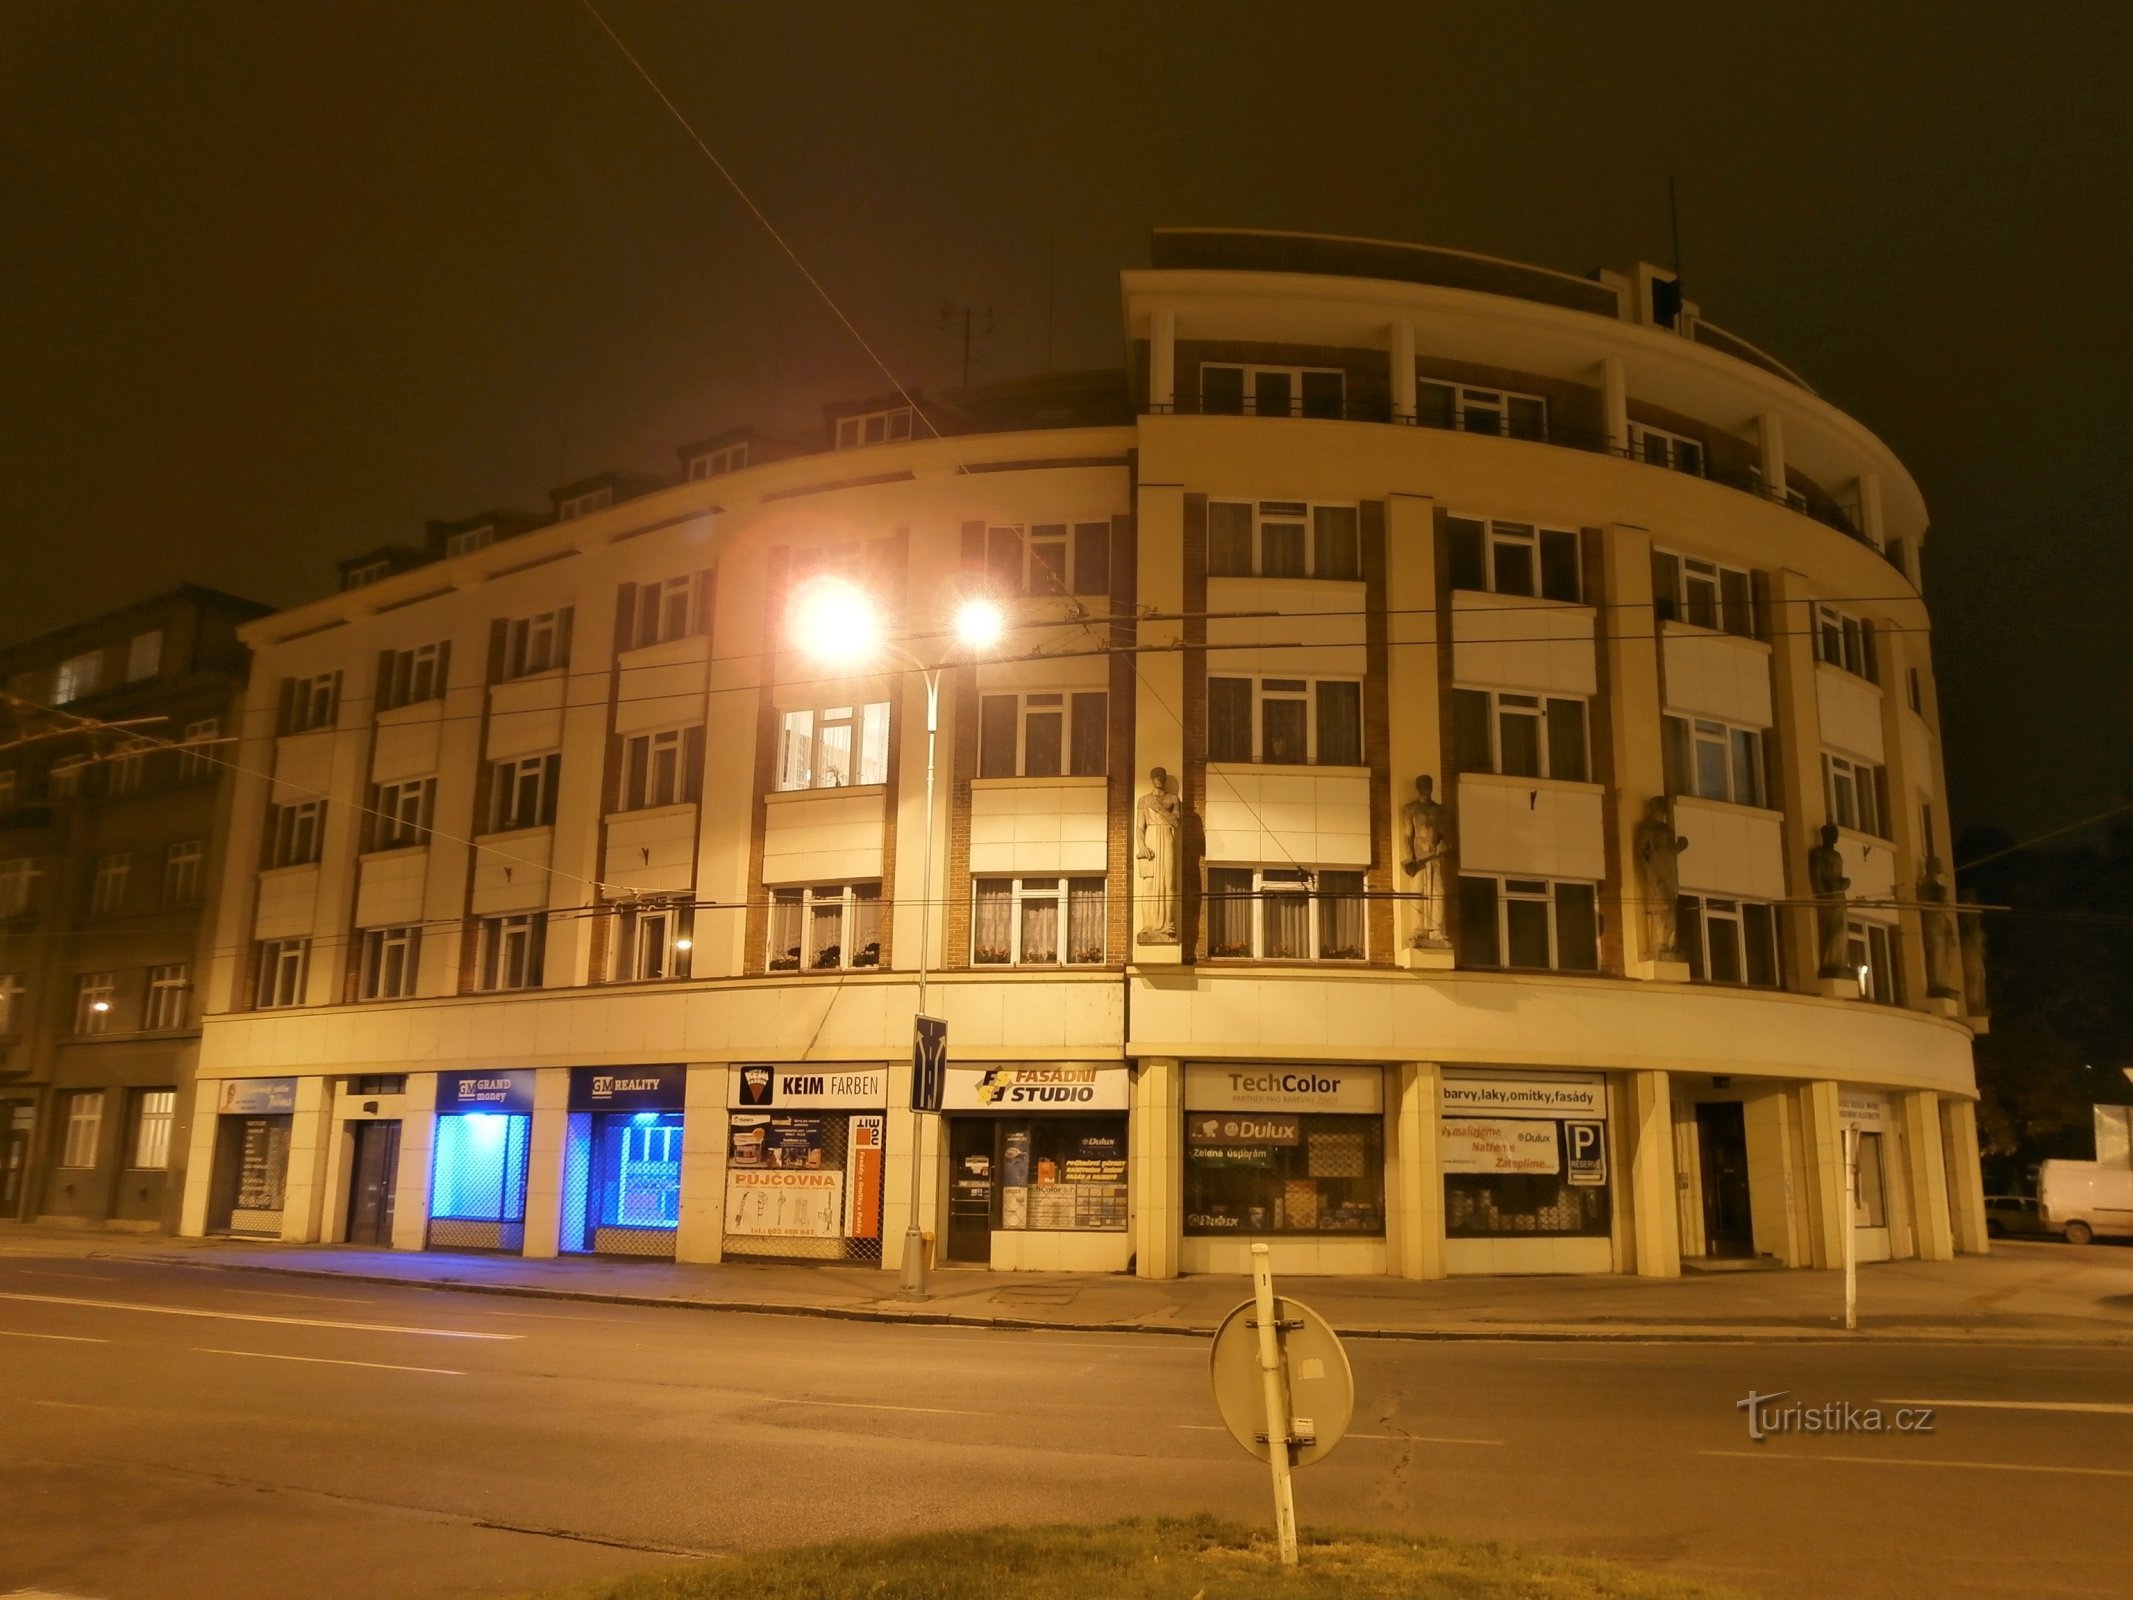 Det første tjekkiske gensidige forsikringsselskab (Hradec Králové, 11.11.2012. maj XNUMX)